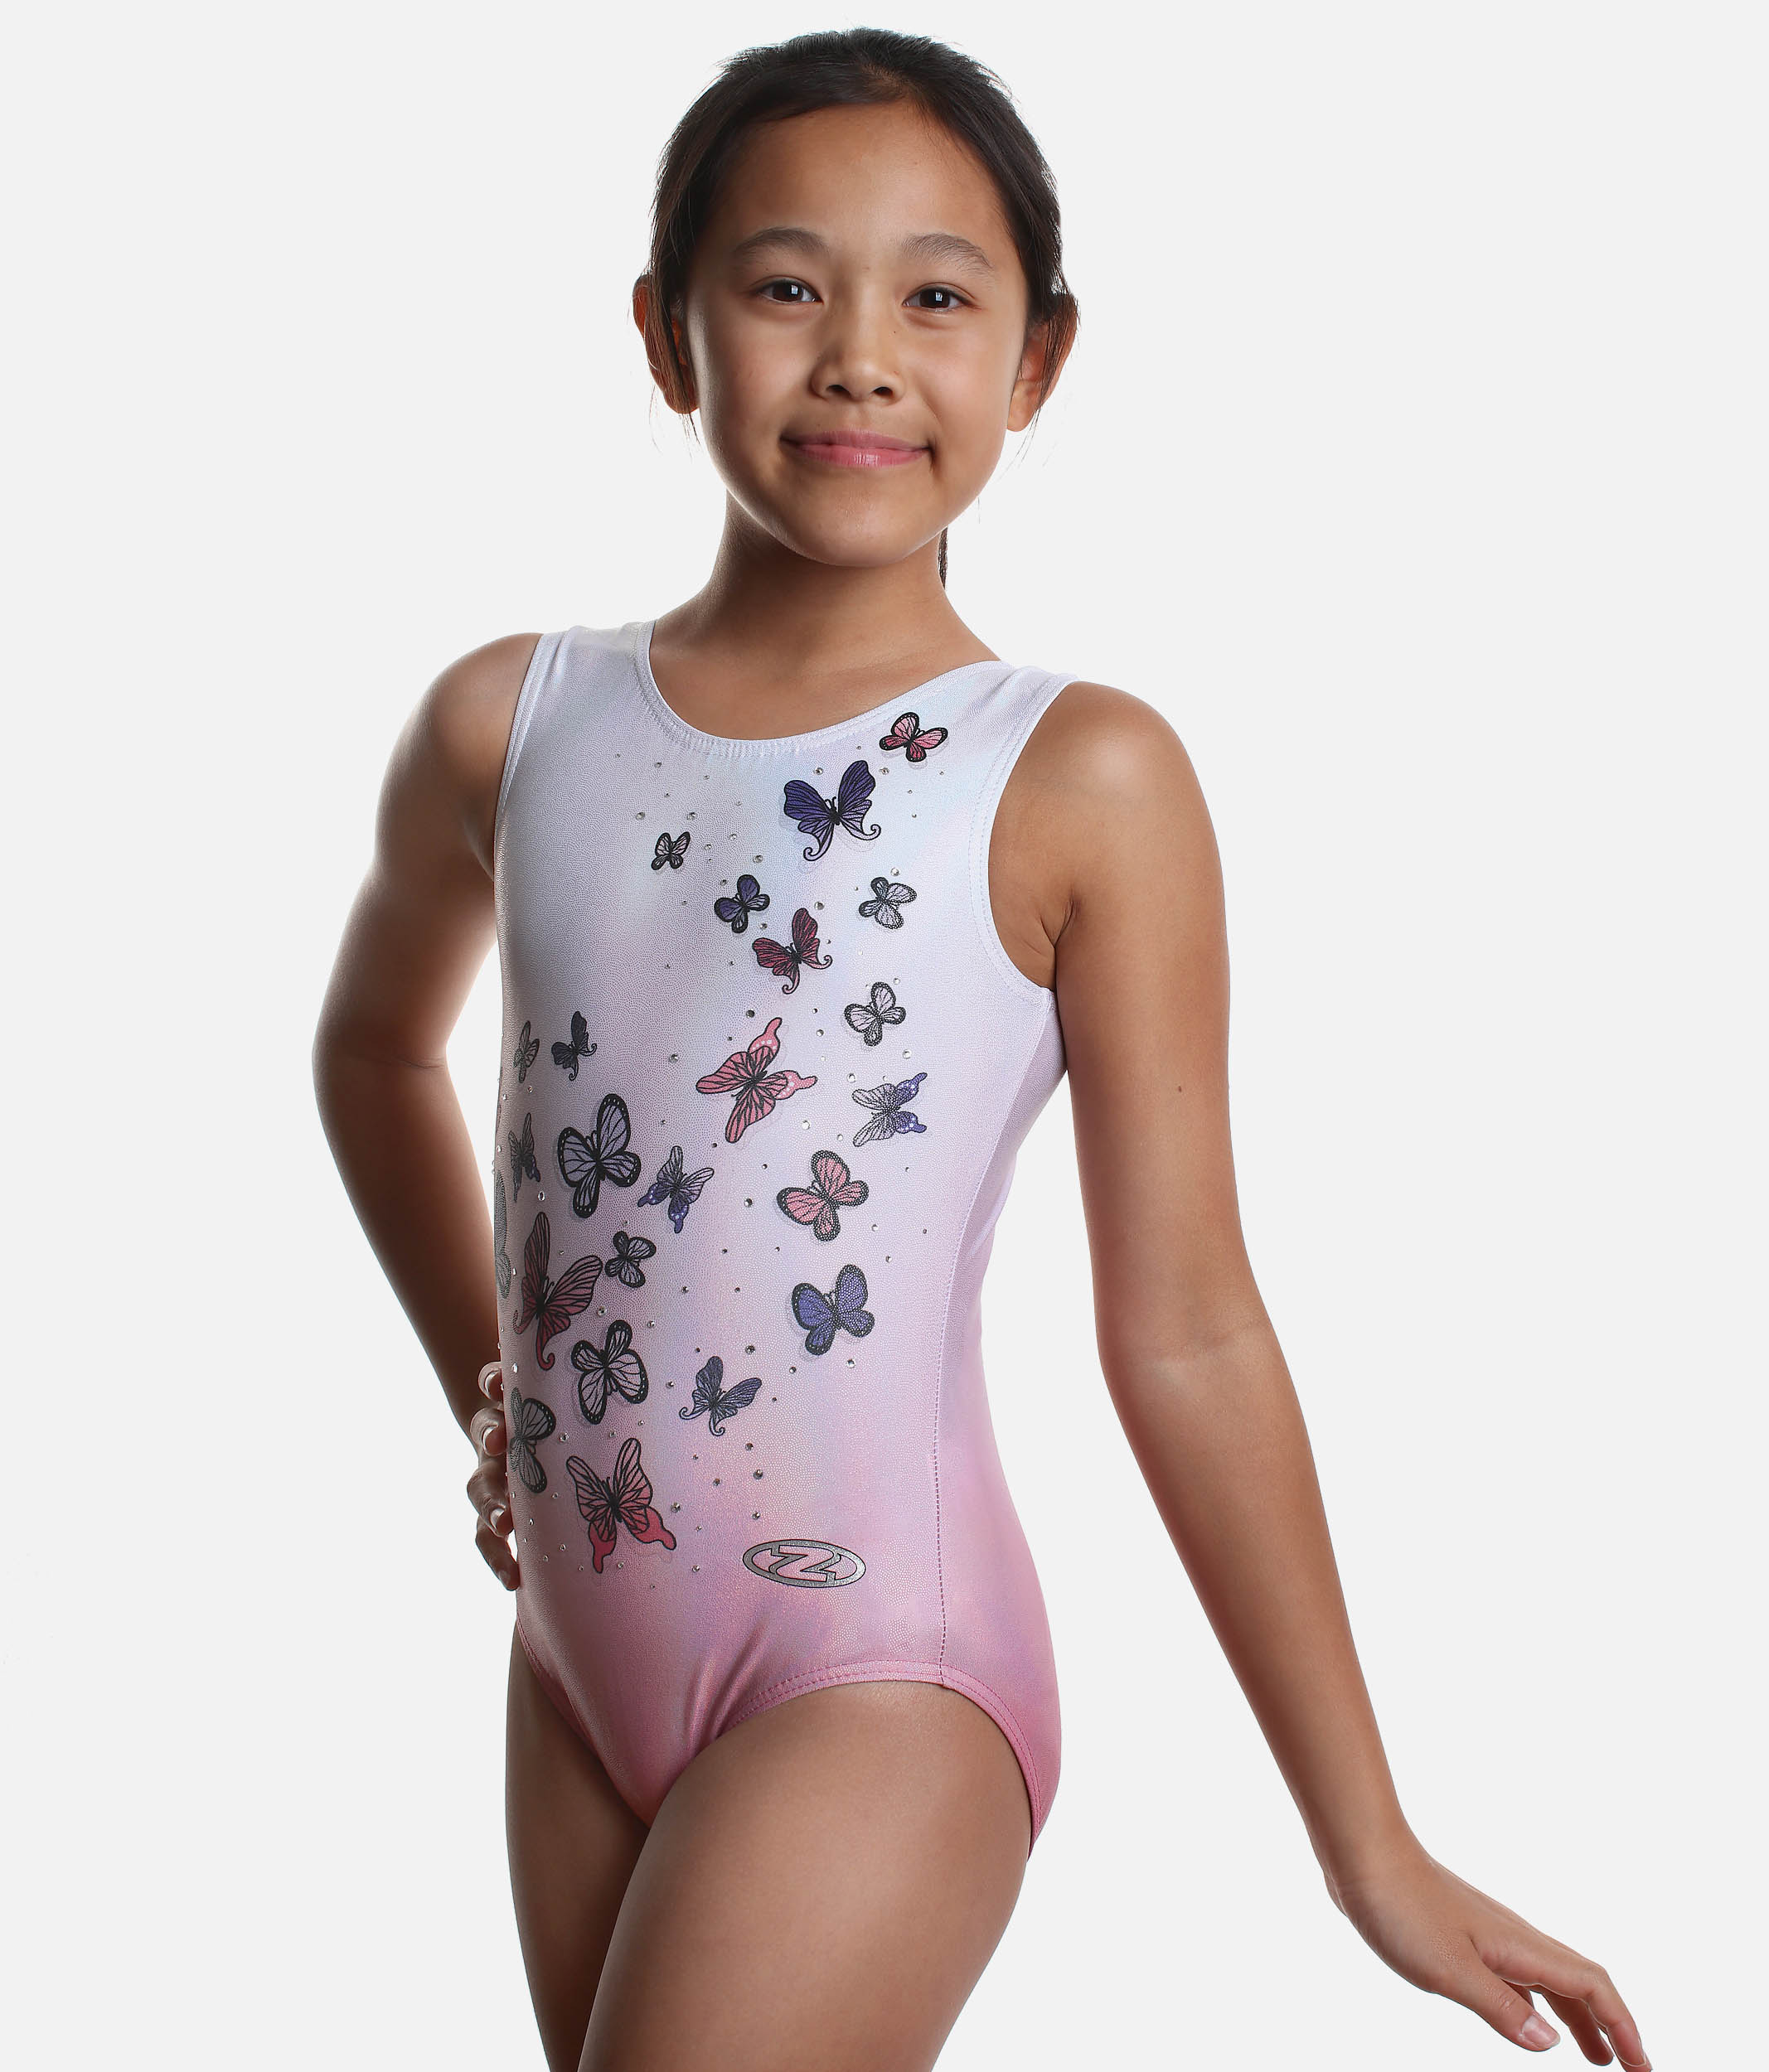 Zone Girls' Gymnastics Leotard, Butterfly Print - Dance World